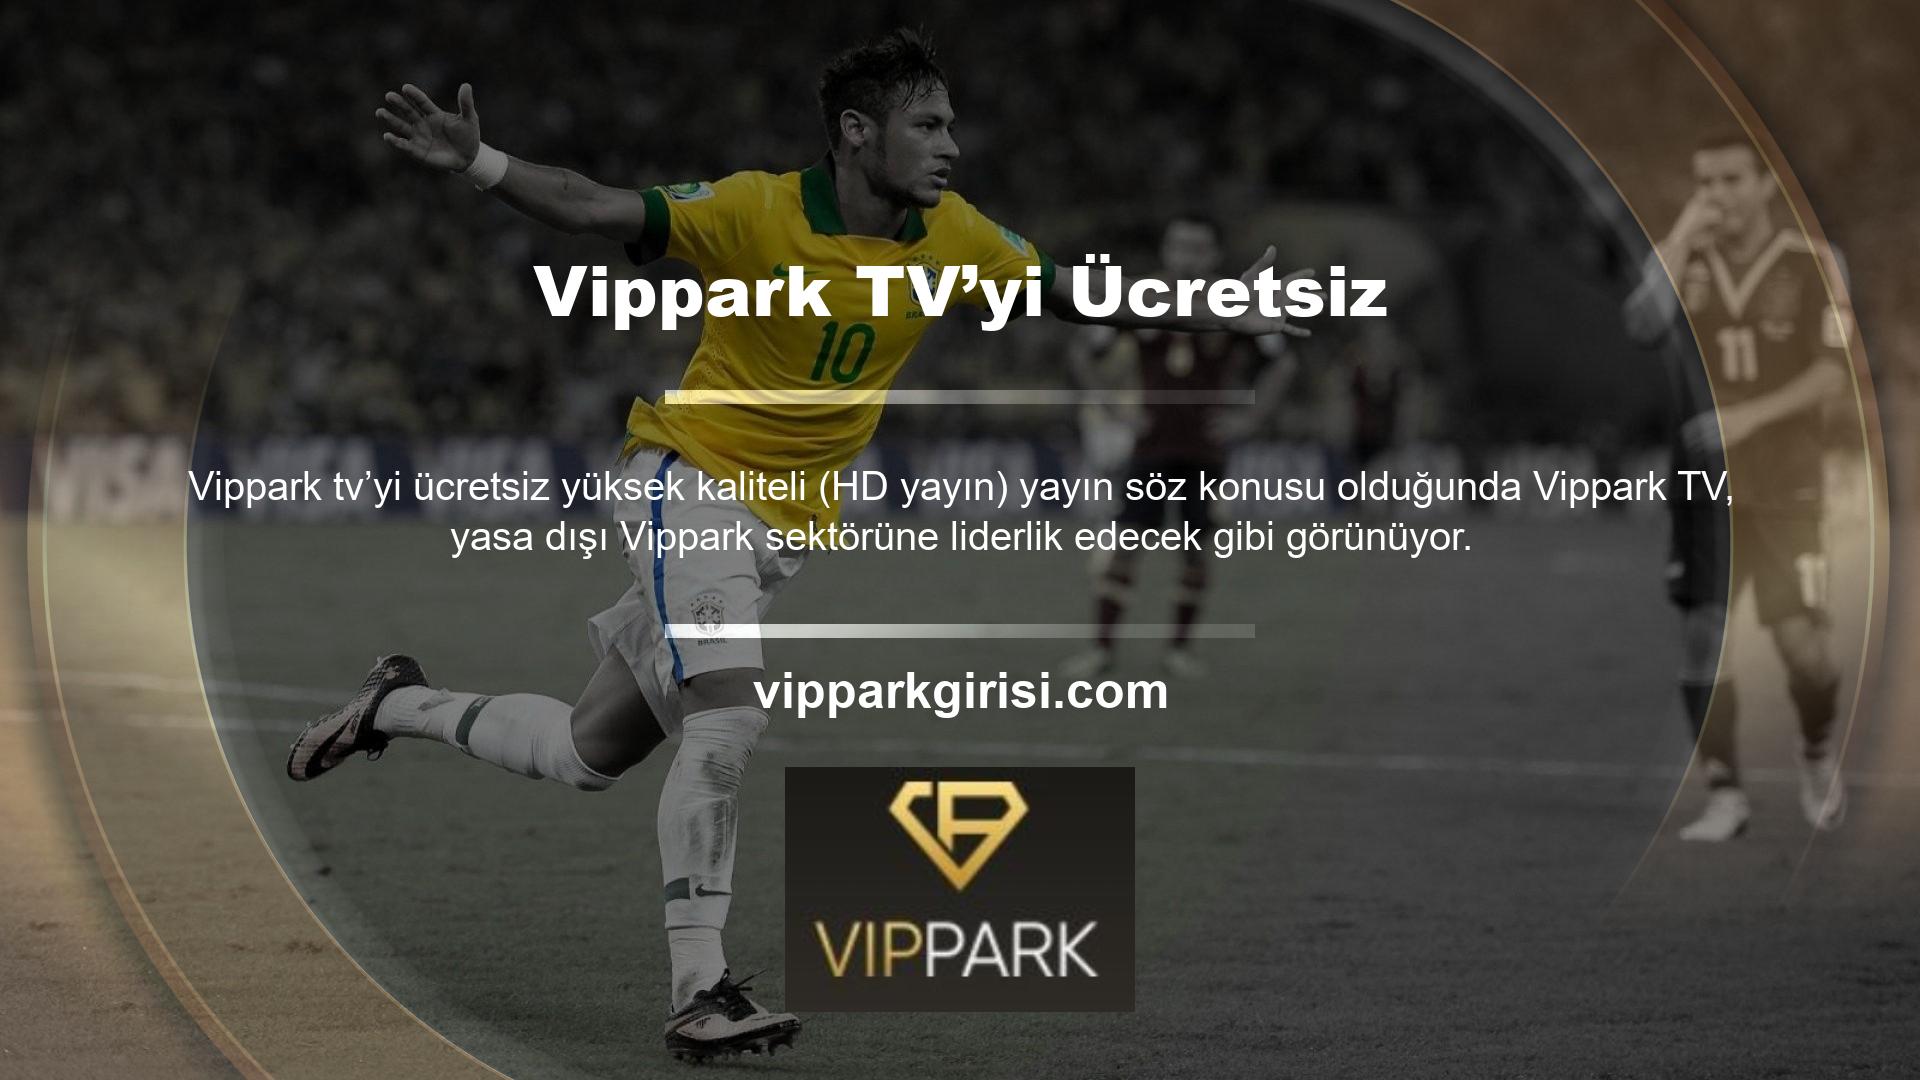 Çoğu şirket Vippark TV'nin kalitesiyle yarışamaz